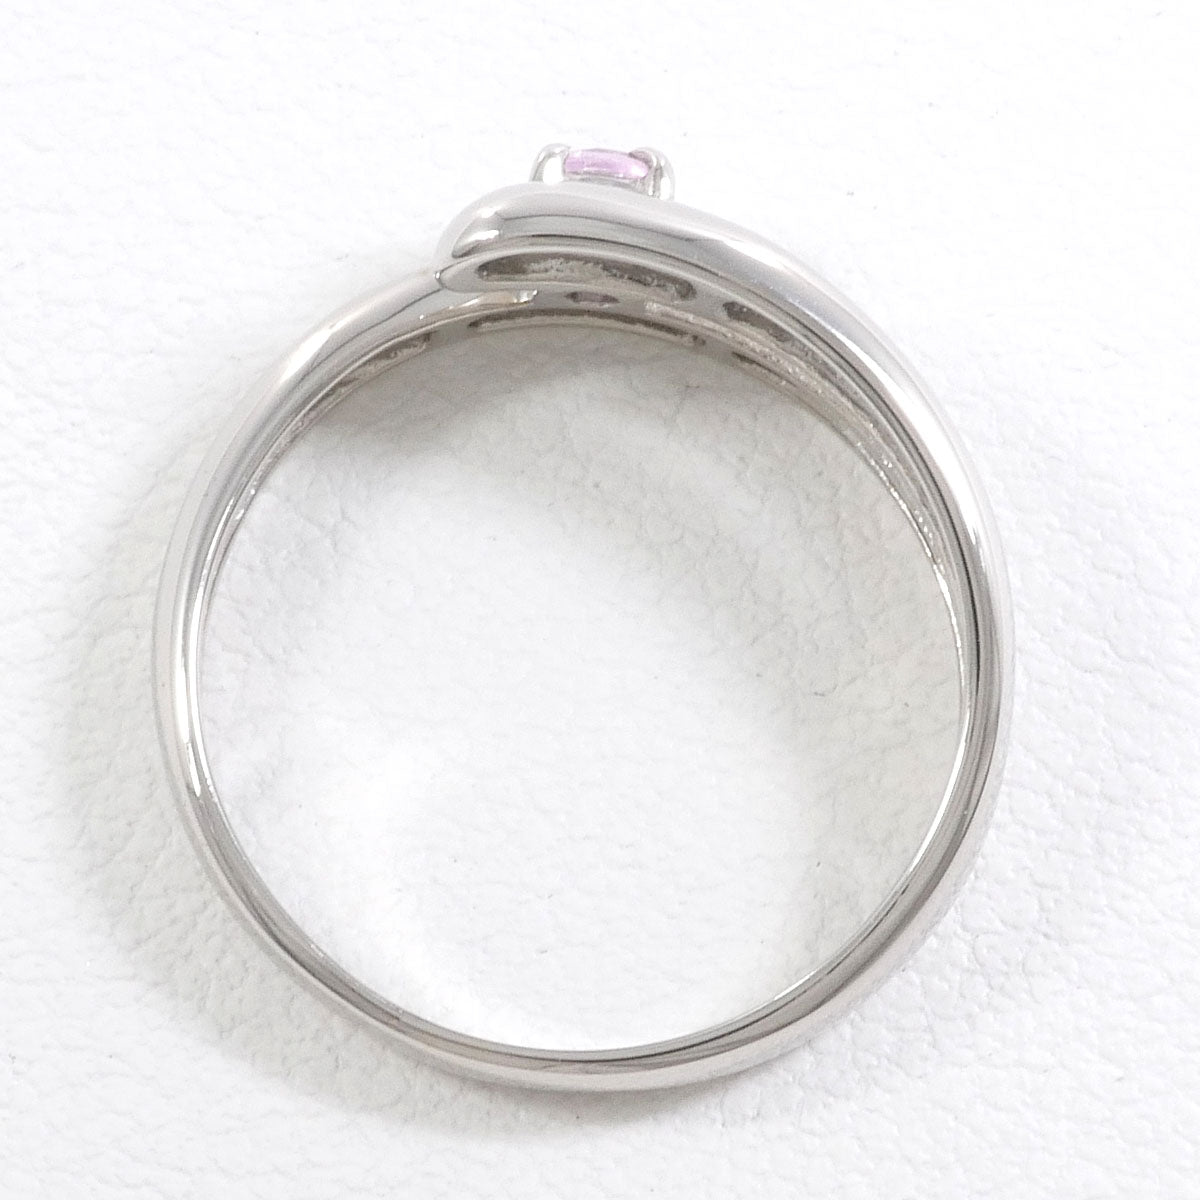 激安価額K14WG リング 指輪 13.5号 サファイア 0.27 ダイヤ 総重量約2.2g 中古 美品 送料無料☆0315 サファイア